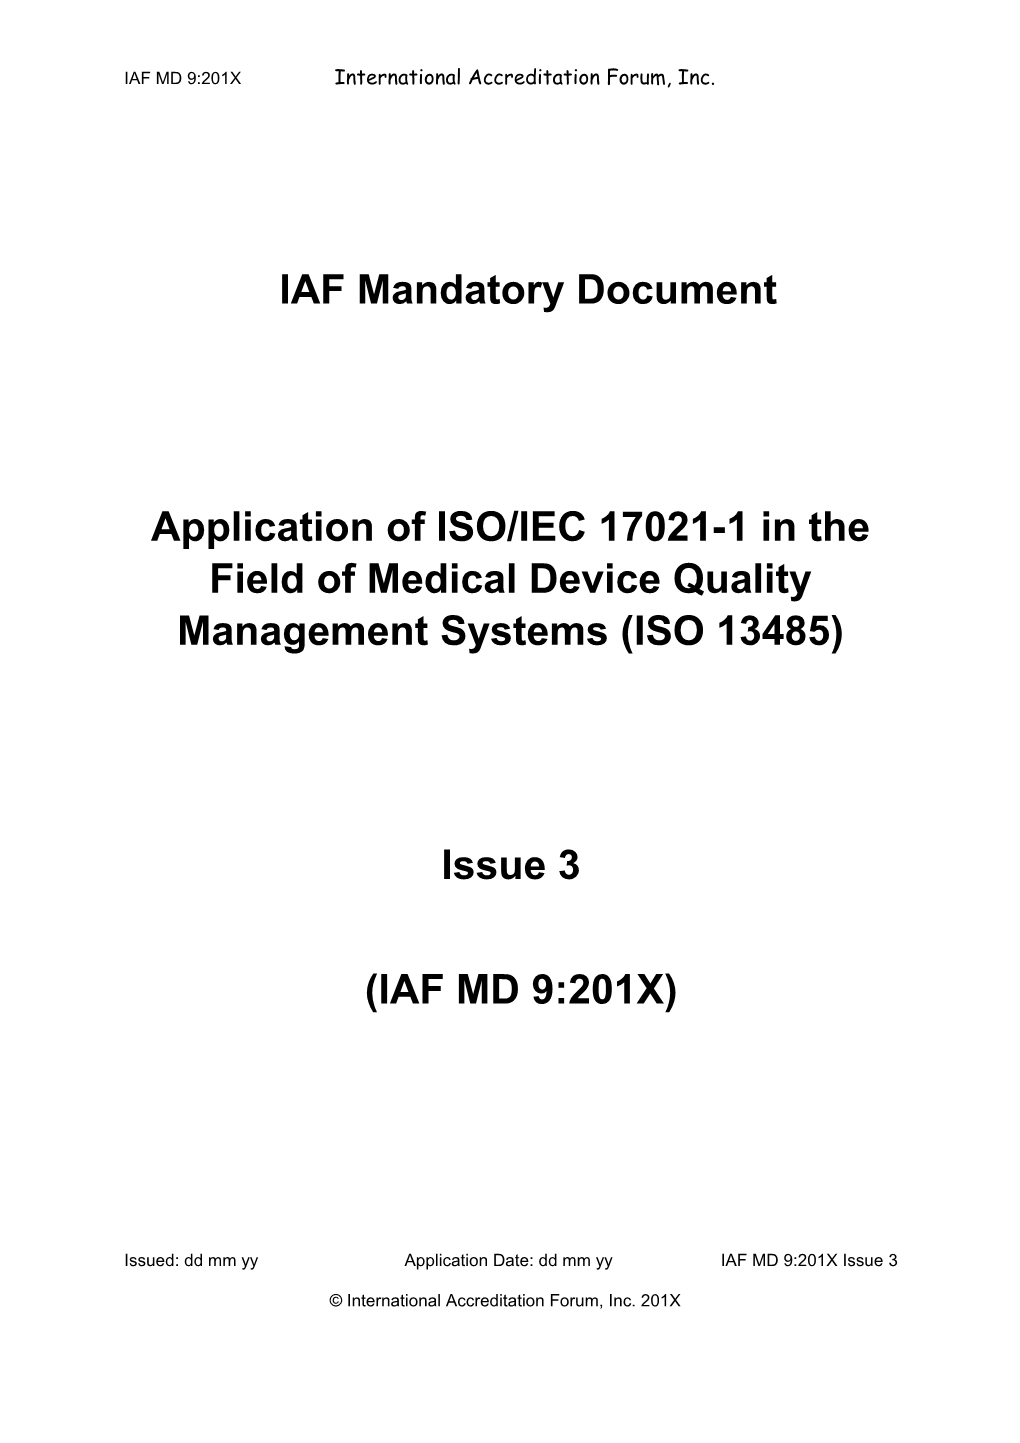 IAF MD 1:2007 Multisite Certification